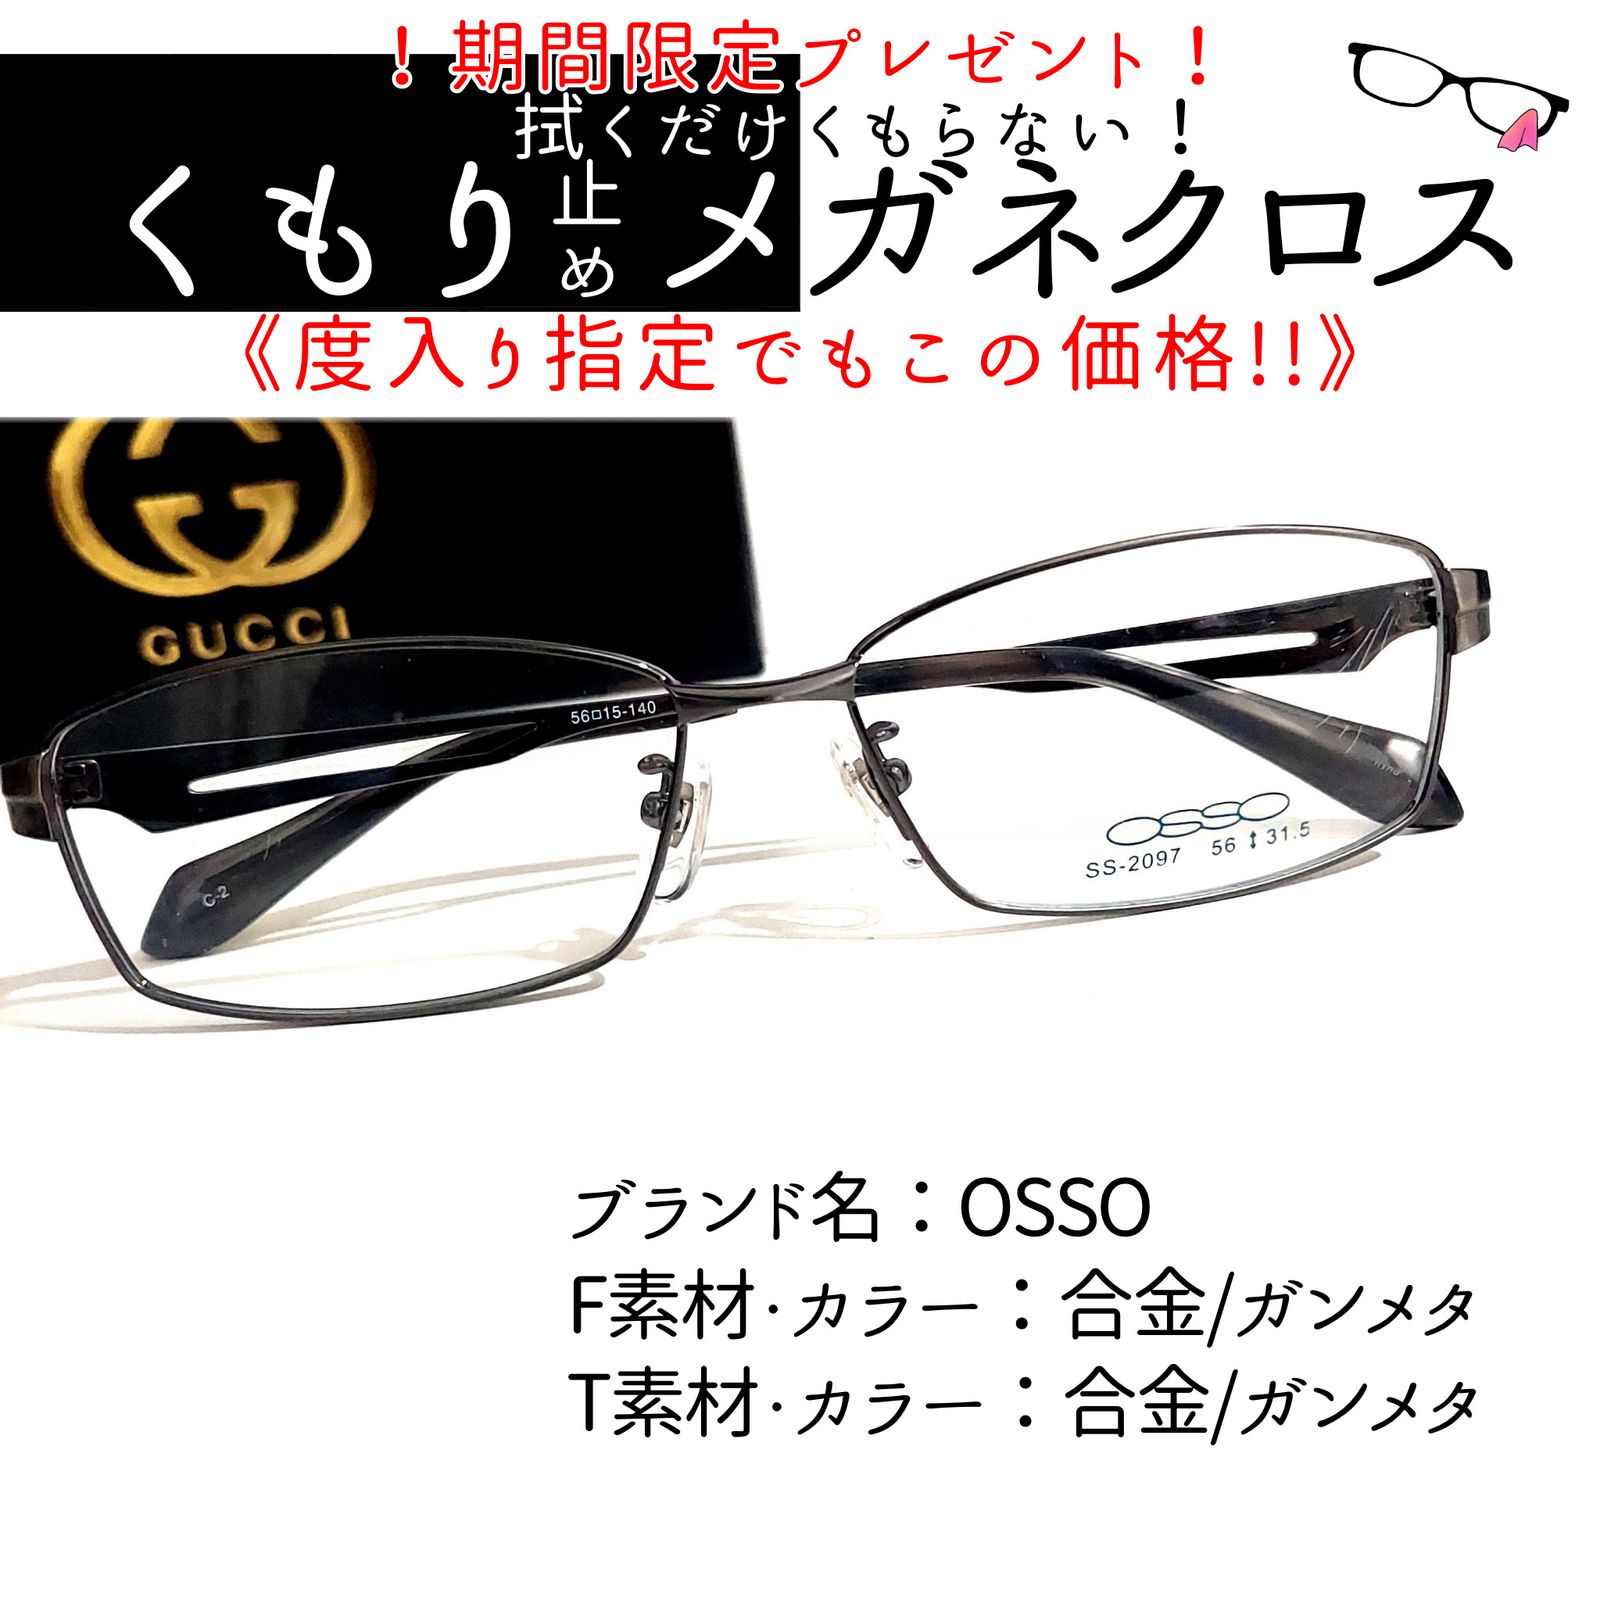 No.1950メガネ OSSO【度数入り込み価格】 - サングラス/メガネ